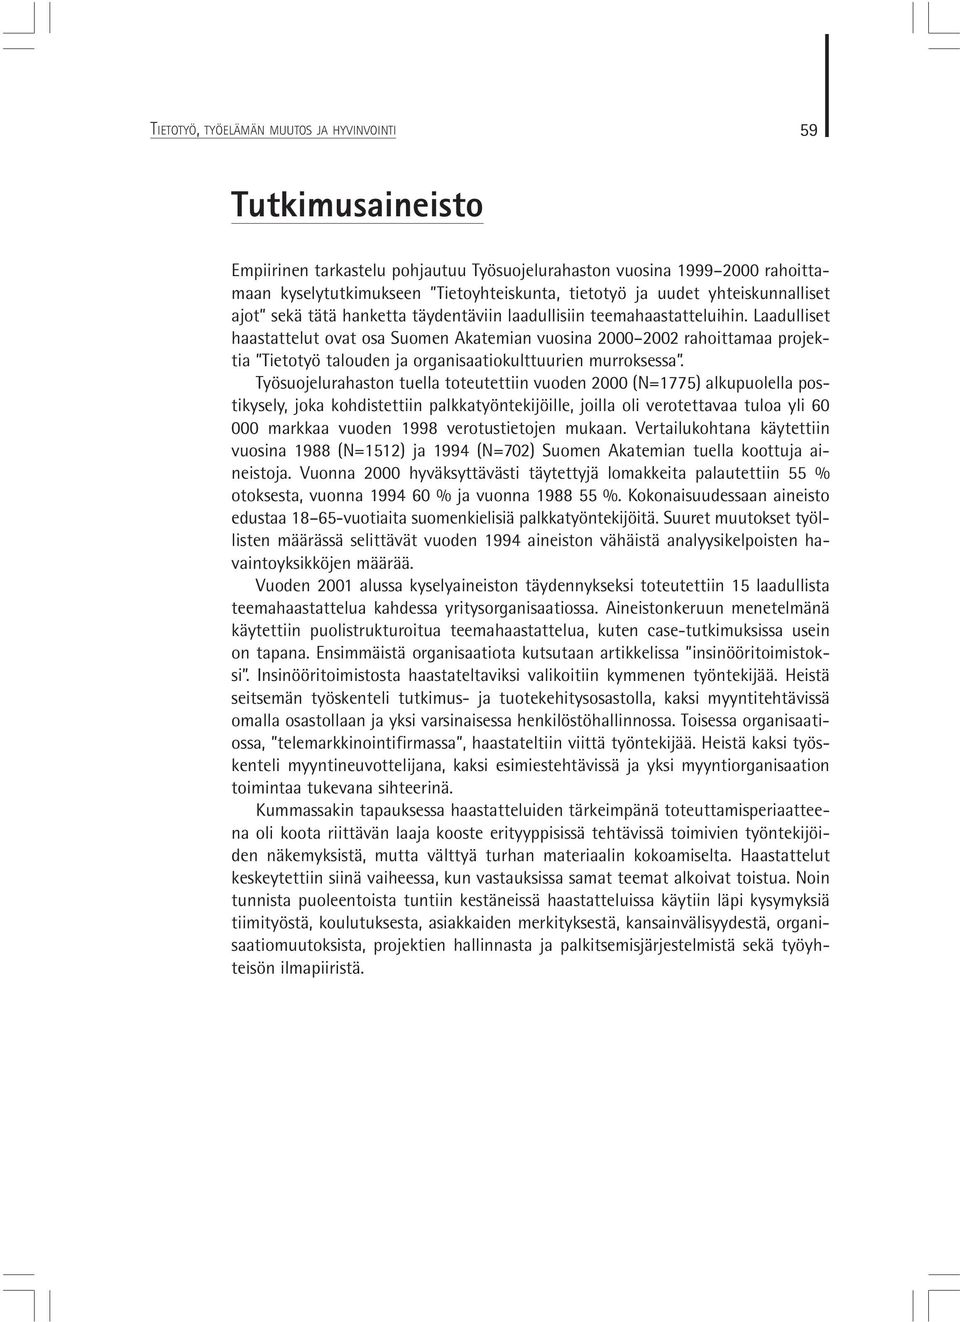 Laadulliset haastattelut ovat osa Suomen Akatemian vuosina 2000 2002 rahoittamaa projektia Tietotyö talouden ja organisaatiokulttuurien murroksessa.